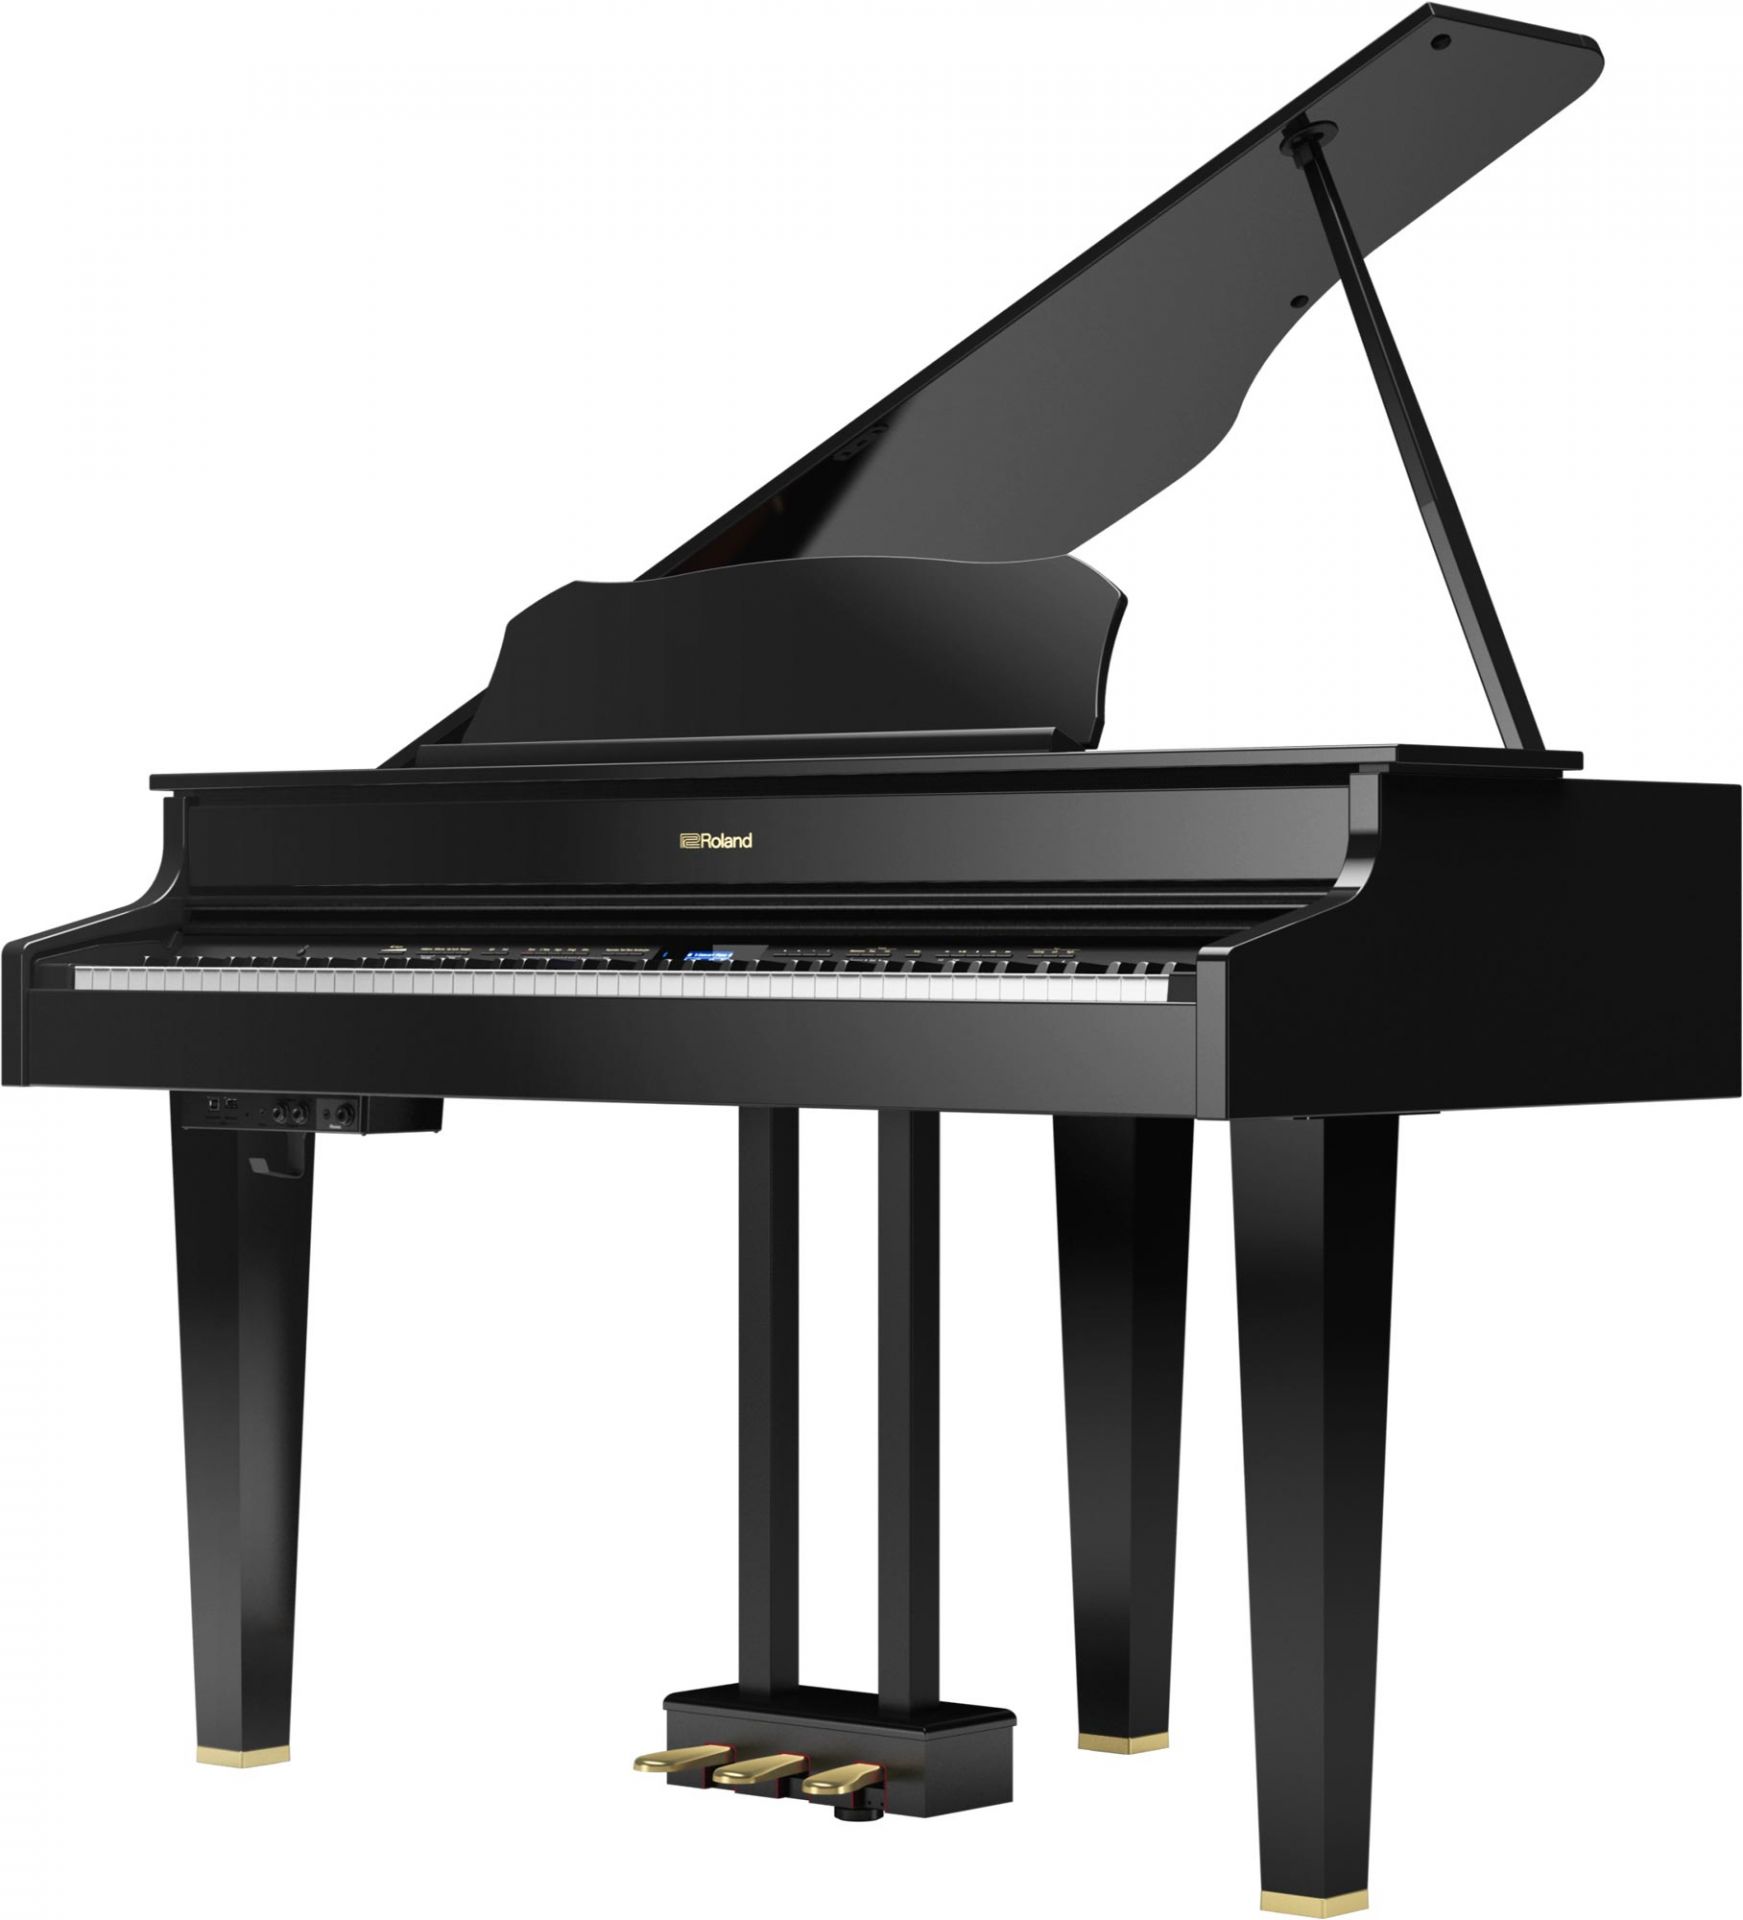 *最新デジタル・グランドピアノモデル「GP609」をお試し頂けます！ Rolamd（ローランド）より発売中の「GP609」を展示中。 グランドピアノらしいエレガントで優雅なフォルム。7つのスピーカーによるマルチ・スピーカー・システムを採用し、アコースティックに迫る音場感と表現力を実現。細部にまでこだ […]